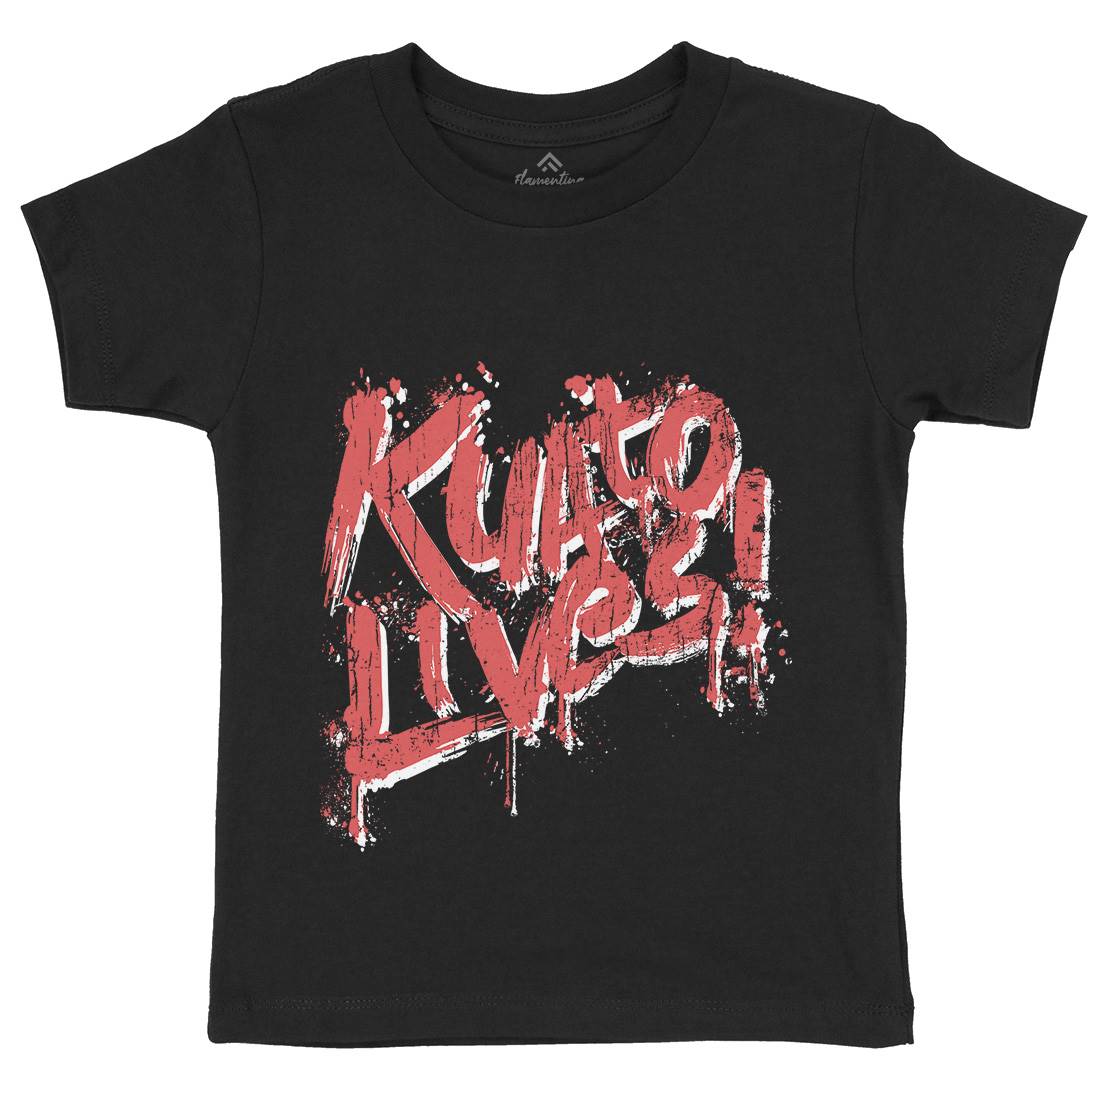 Kuato Lives Kids Crew Neck T-Shirt Space D249